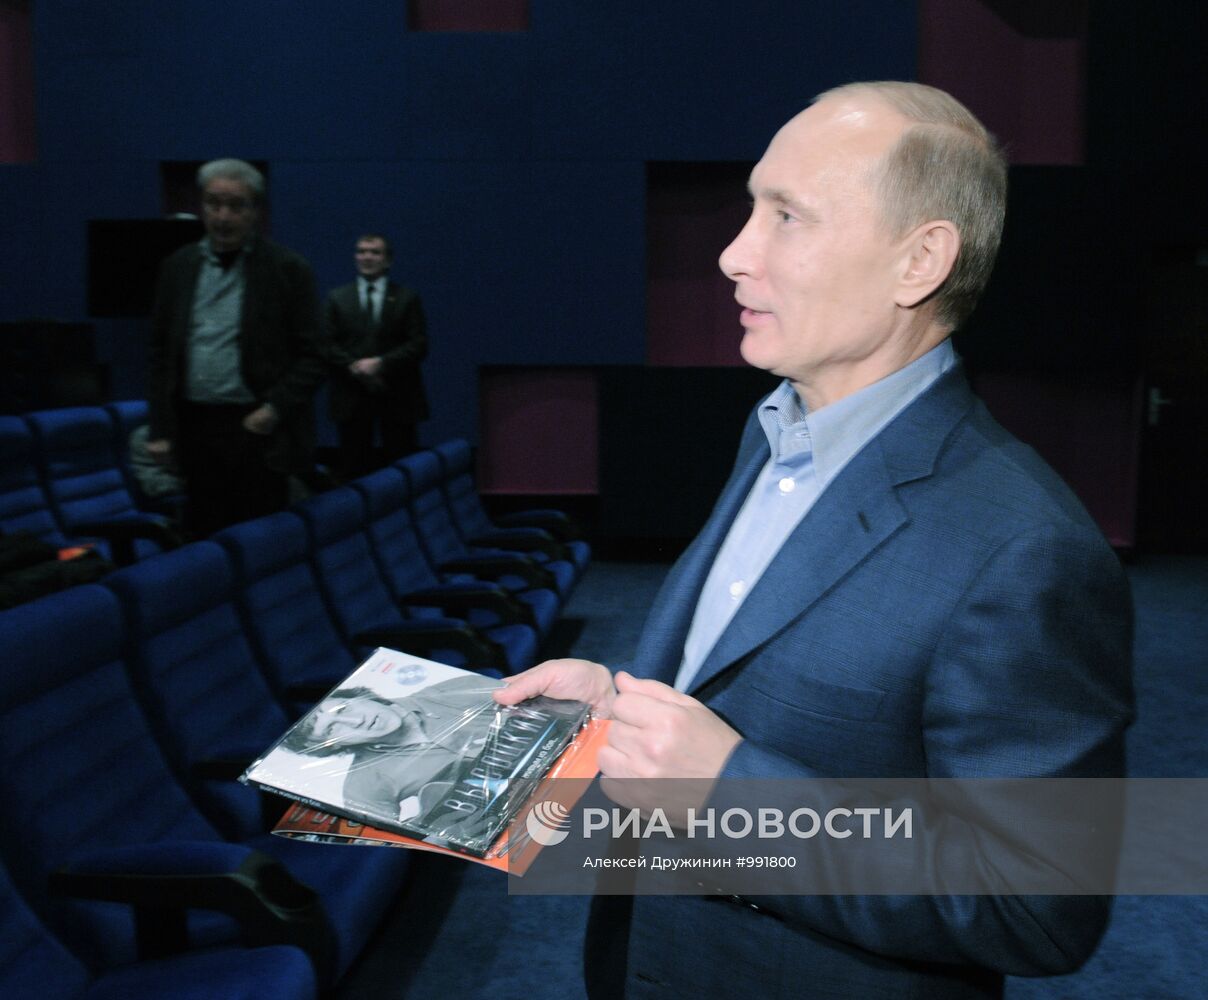 В.Путин посмотрел на киностудии "Мосфильм" фильм "Высоцкий"